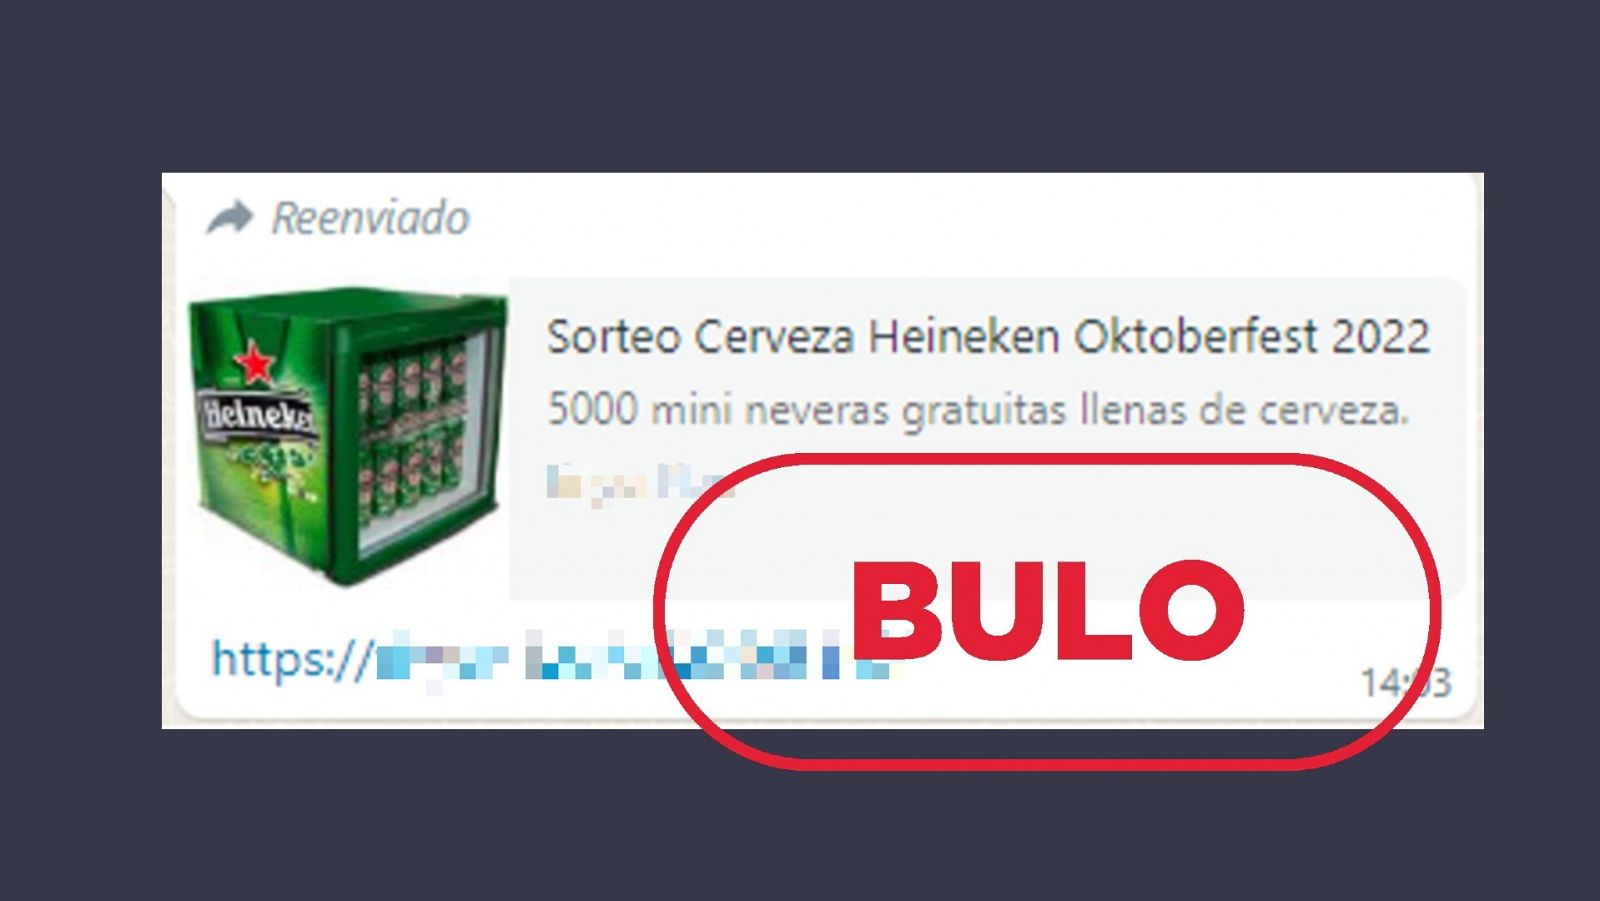 Mensaje que difunde la idea de que Heineken está sorteando 5.000 mini neveras gratuitas llenas de cerveza, con el sello de bulo en rojo.